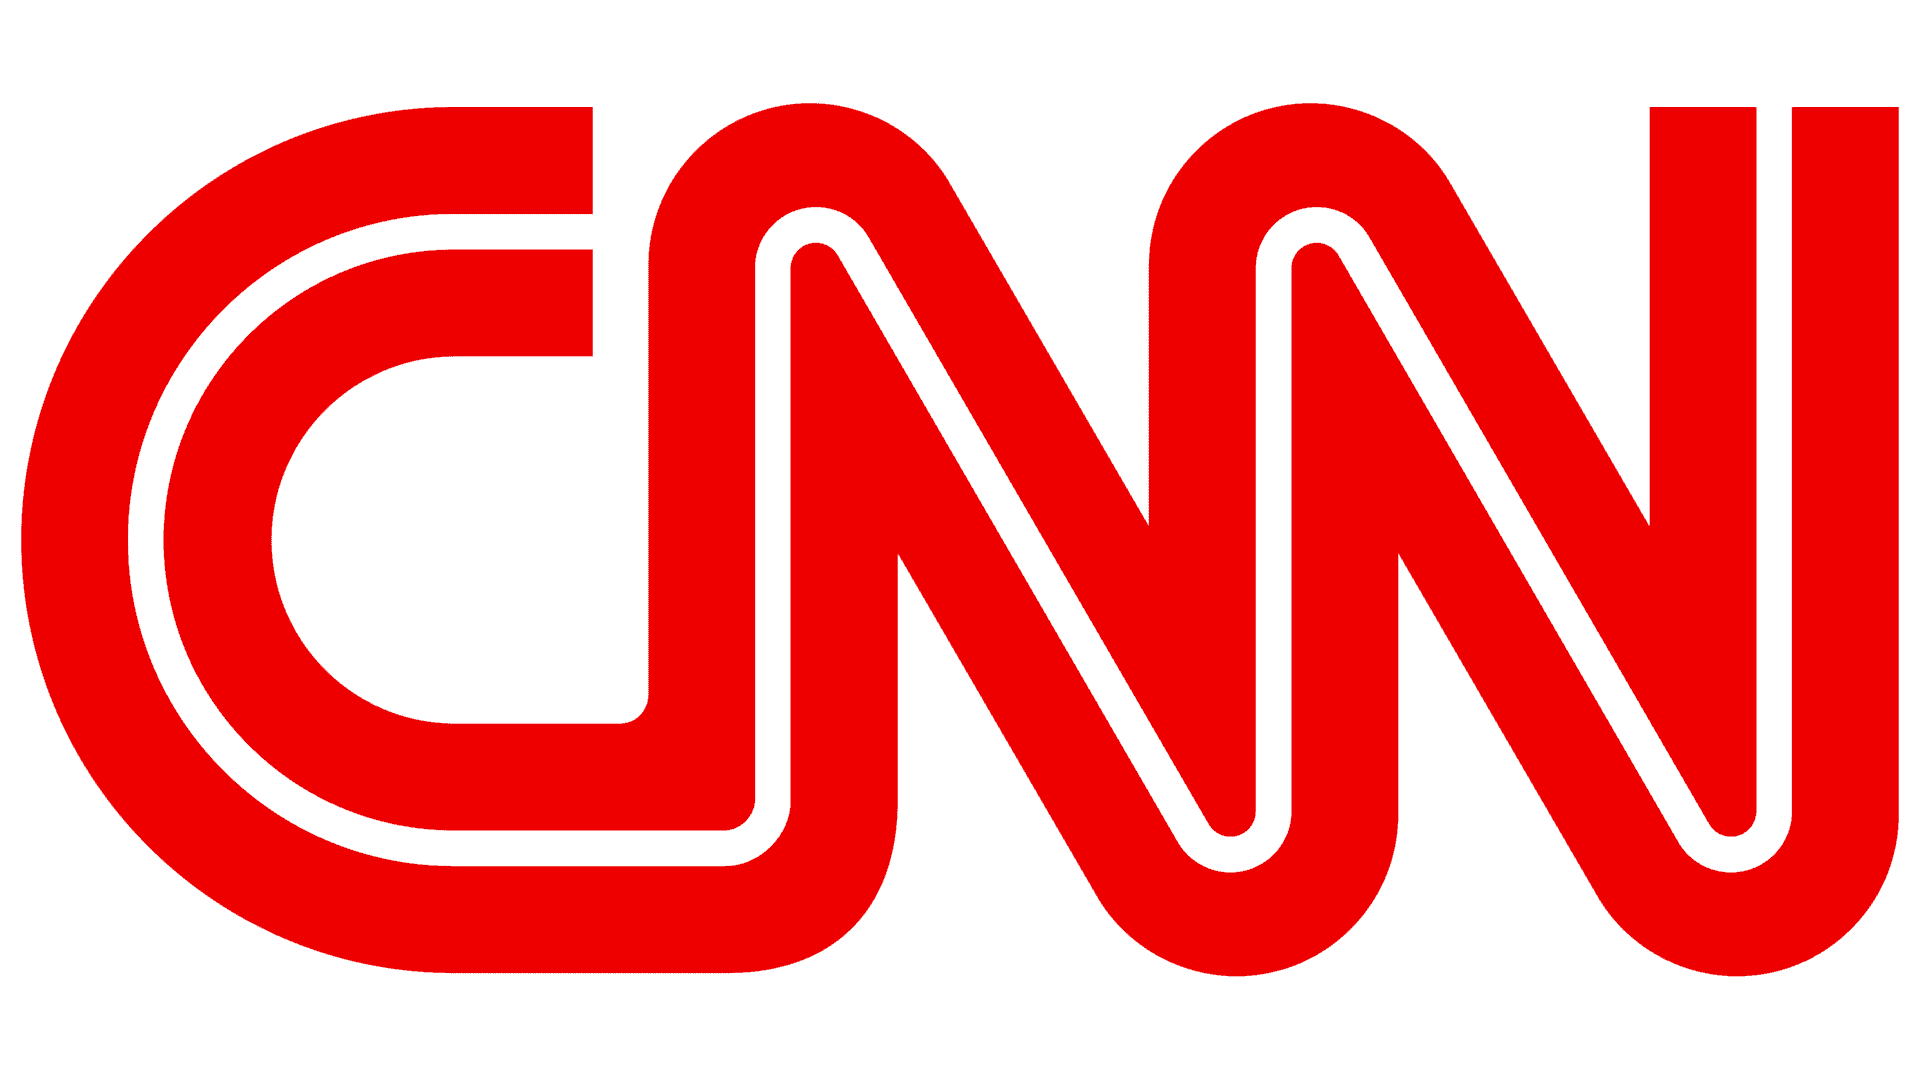 the cnn logo